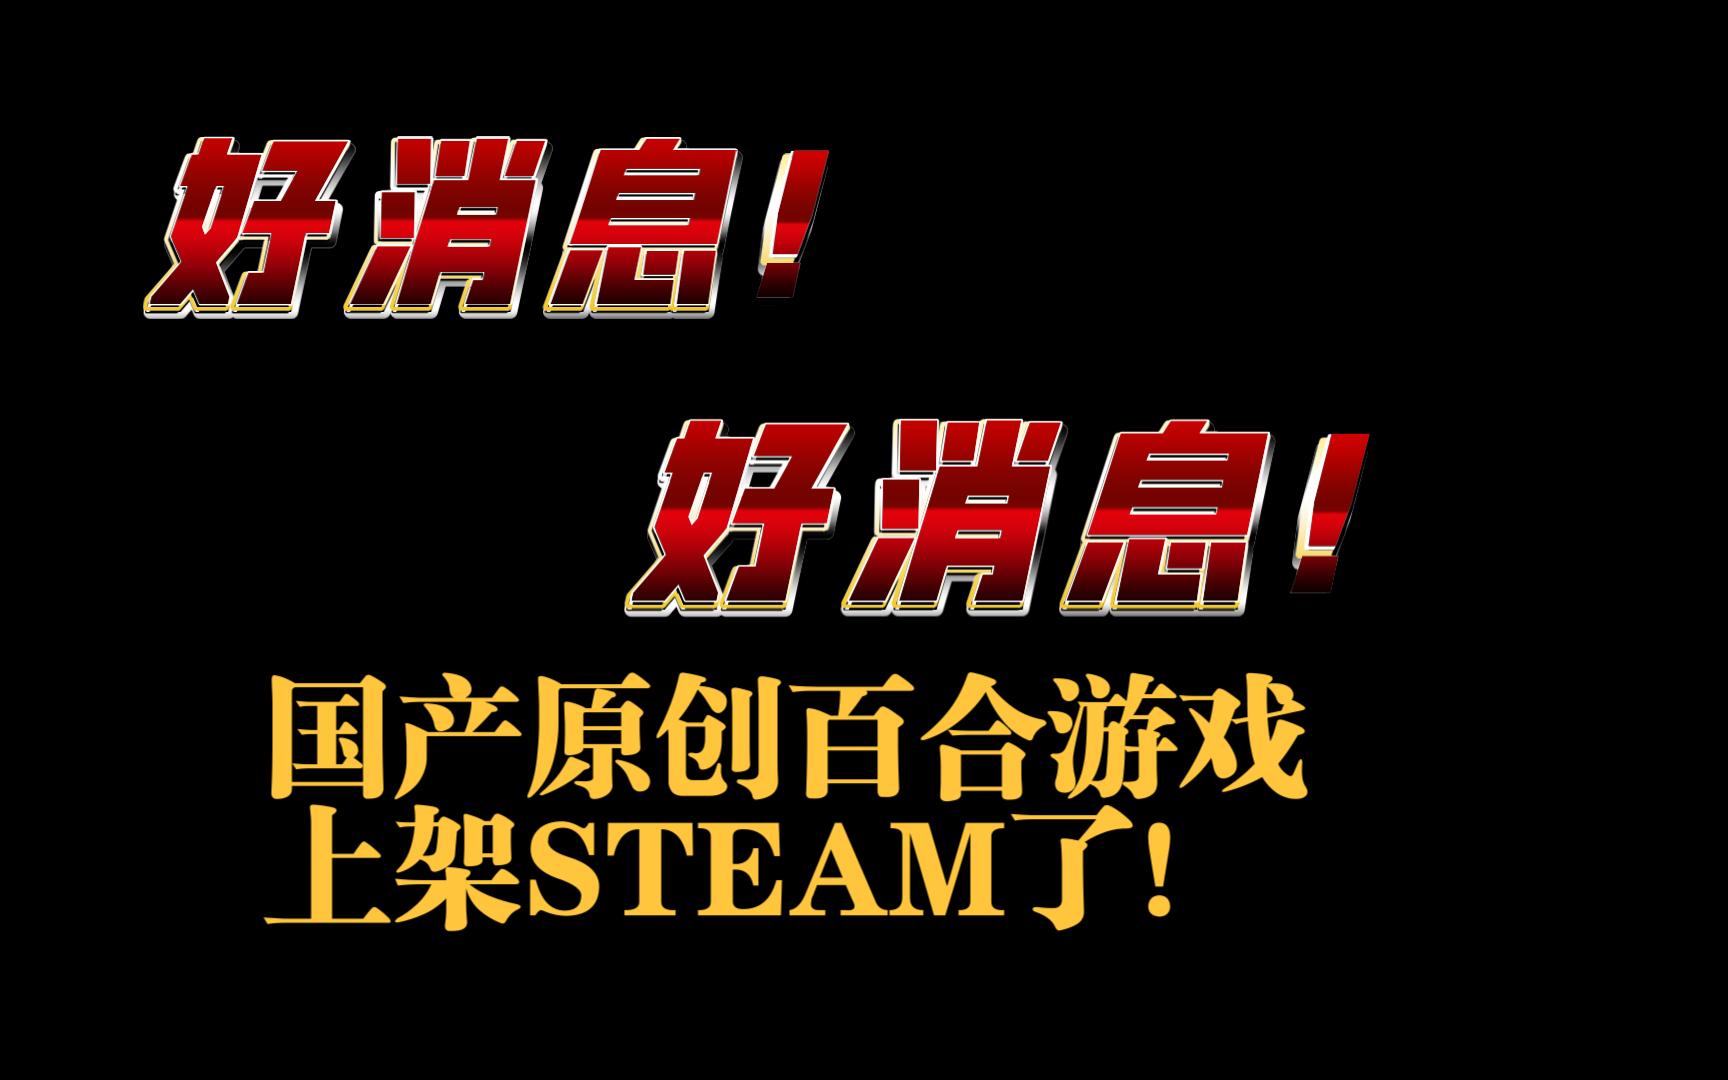 国产原创百合游戏《皎月坠落之时》上架STEAM了！！